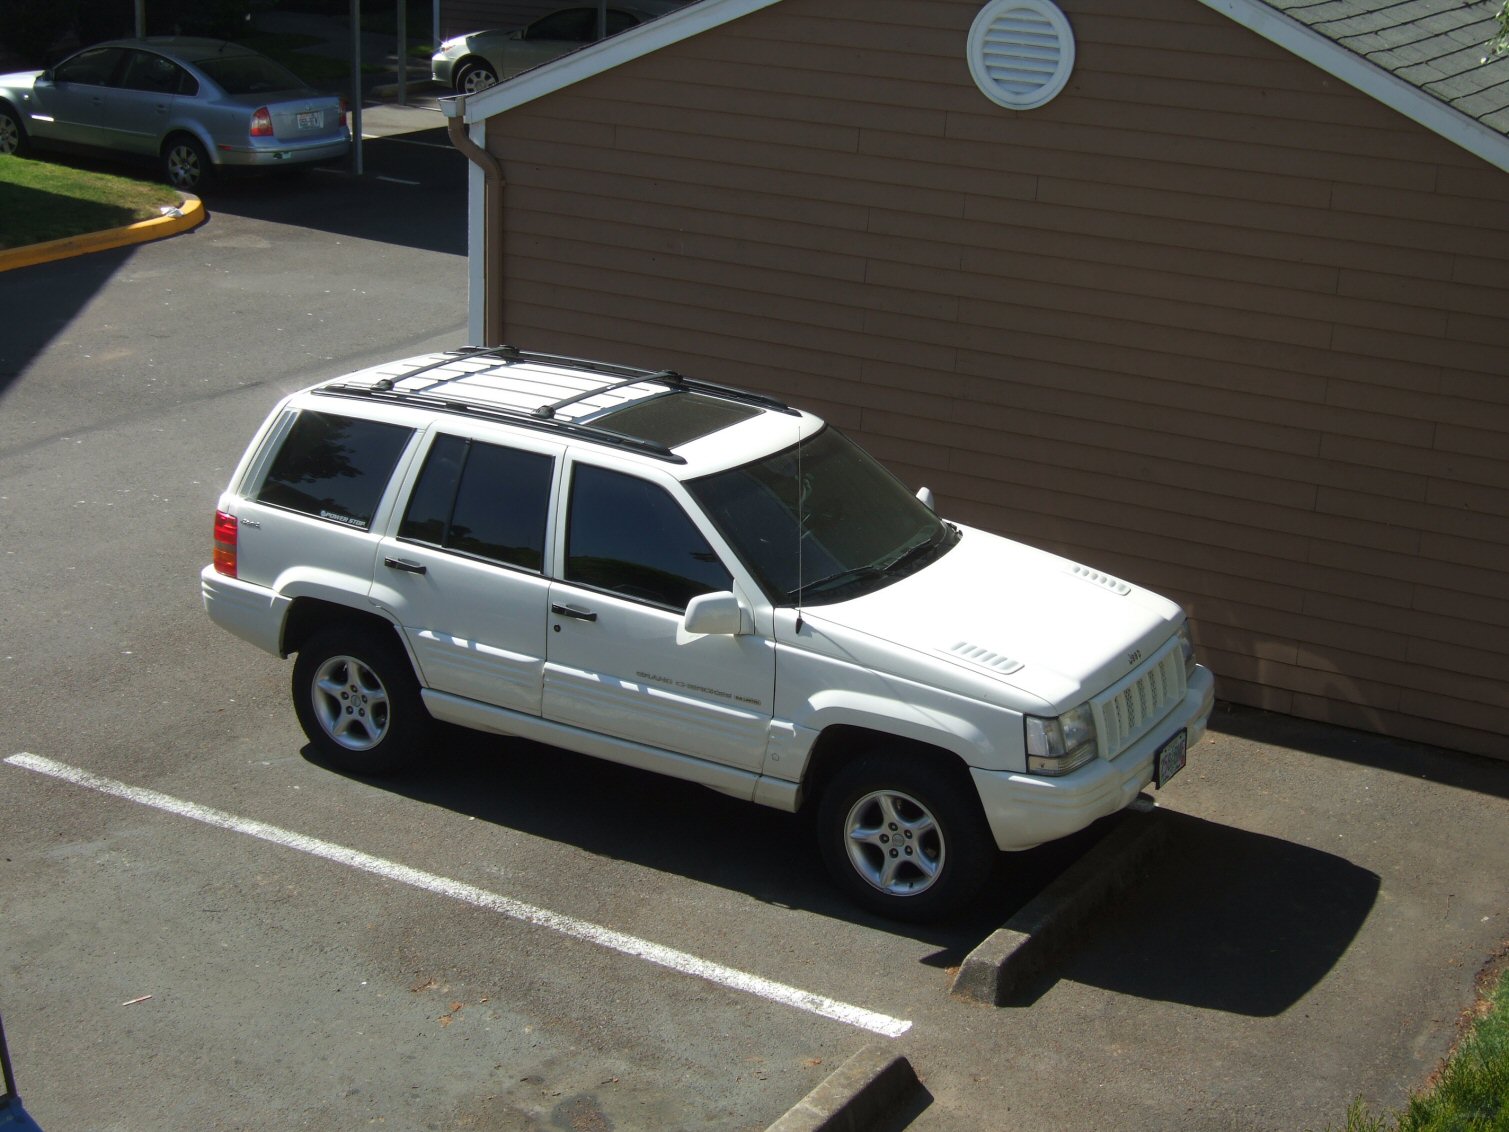 1998 Jeep grand cherokee laredo fuel economy #4